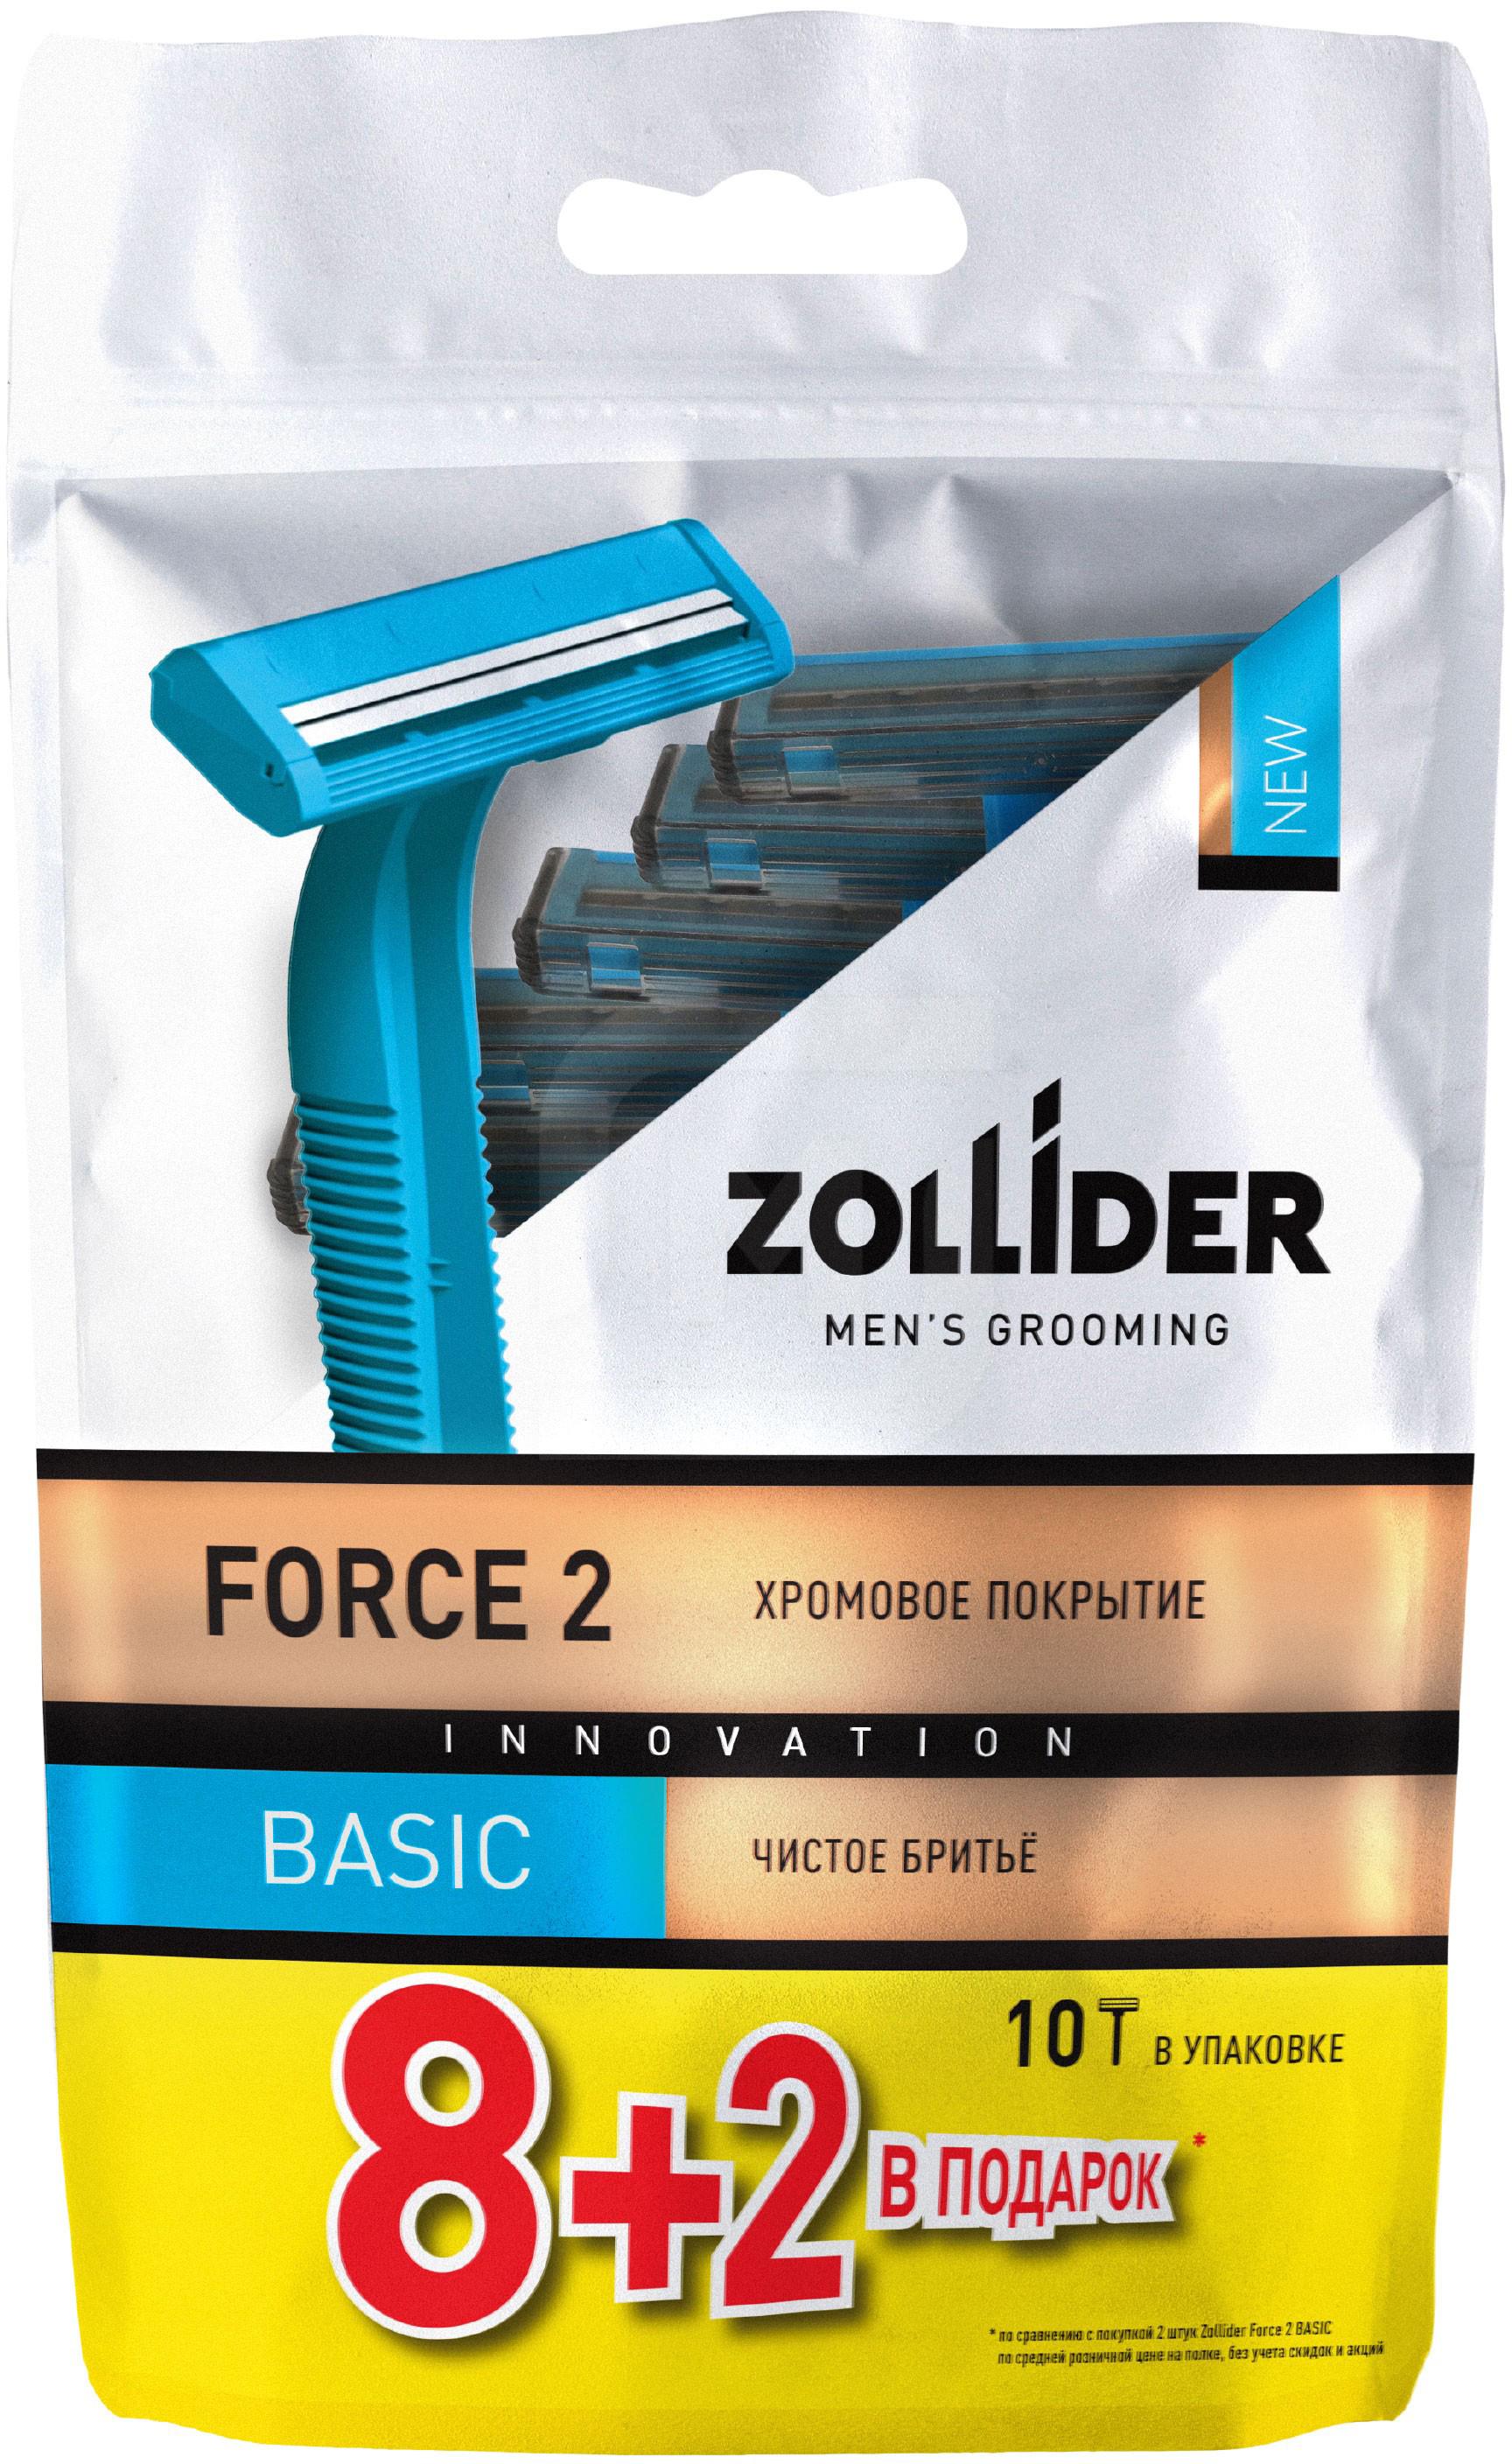 Бритвенные станки мужские Zollider Force 2 Basic одноразовые с двойными лезвиями 8 + 2 шт бритвенные станки мужские zollider force 2 pro одноразовые с двойными лезвиями 4 1 шт